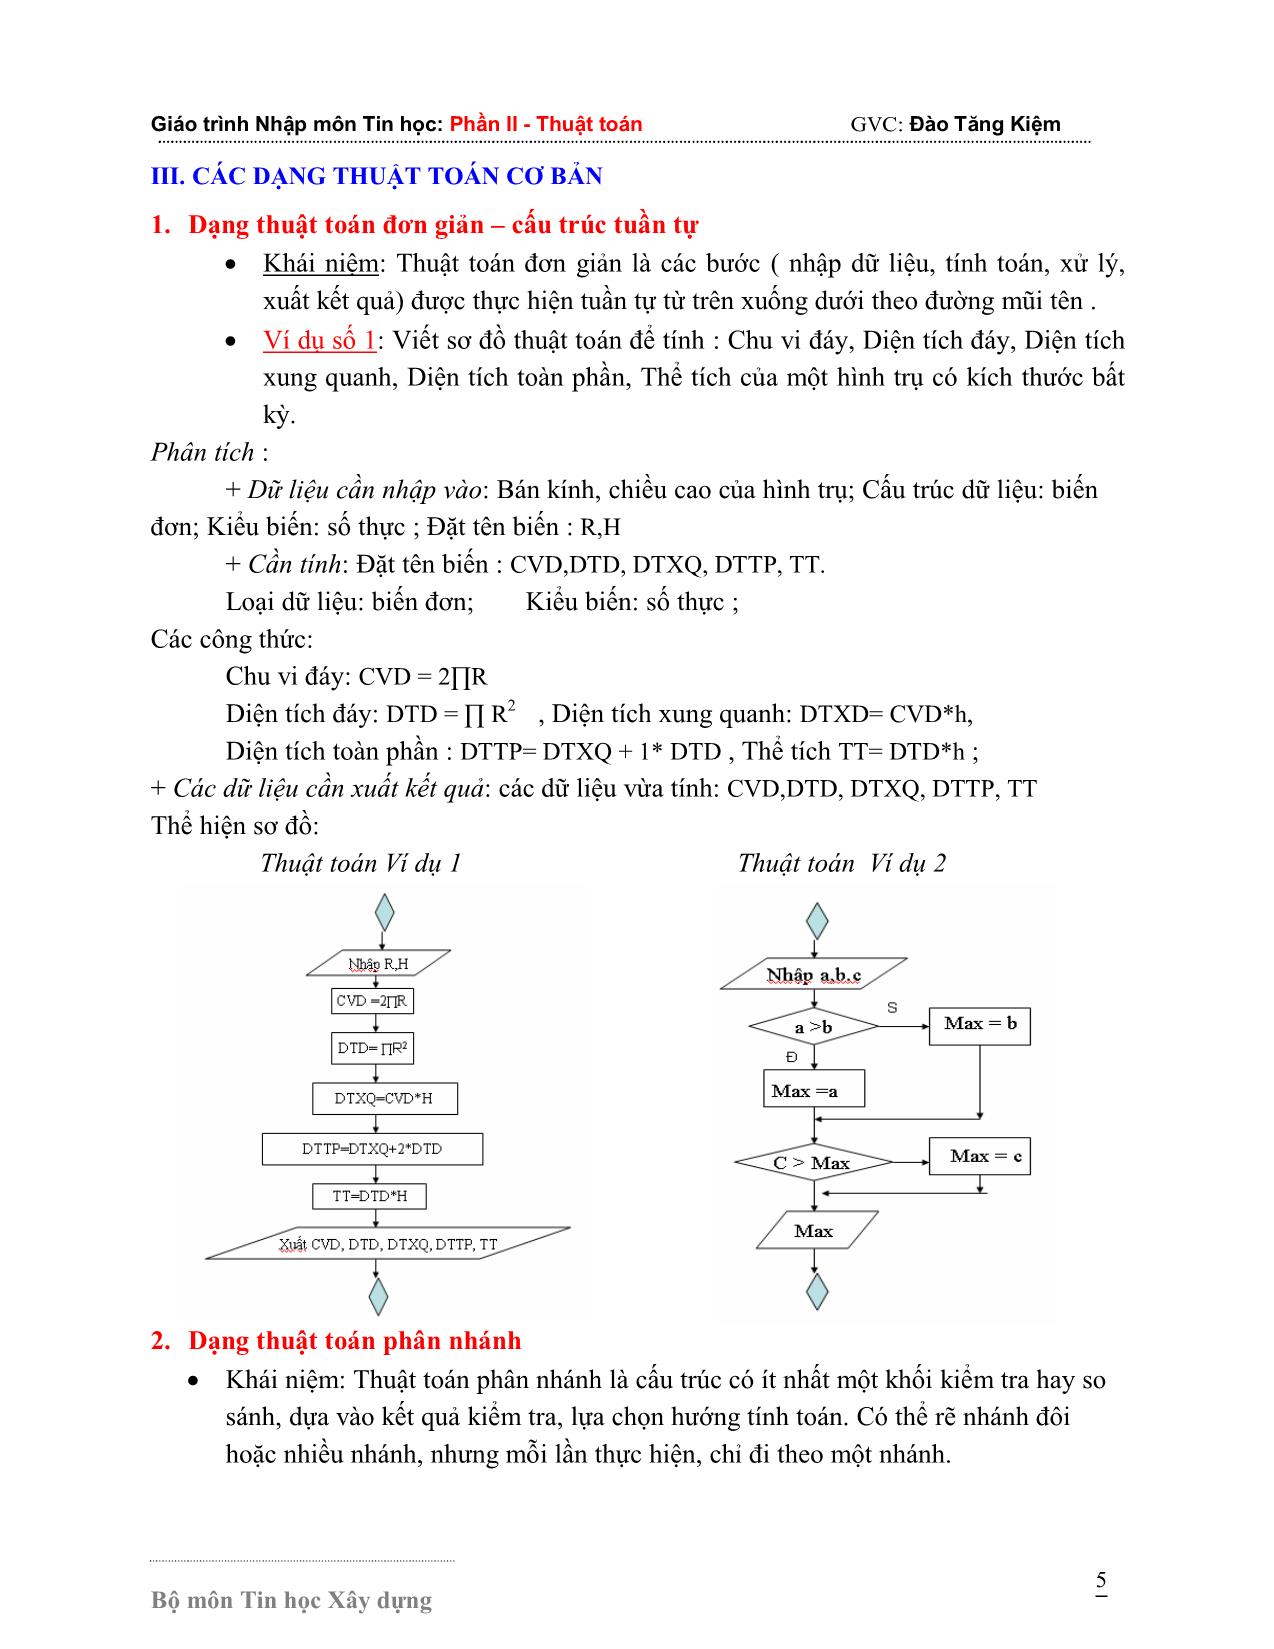 Giáo trình Nhập môn Tin học - Phần 2: Thuật toán trang 5